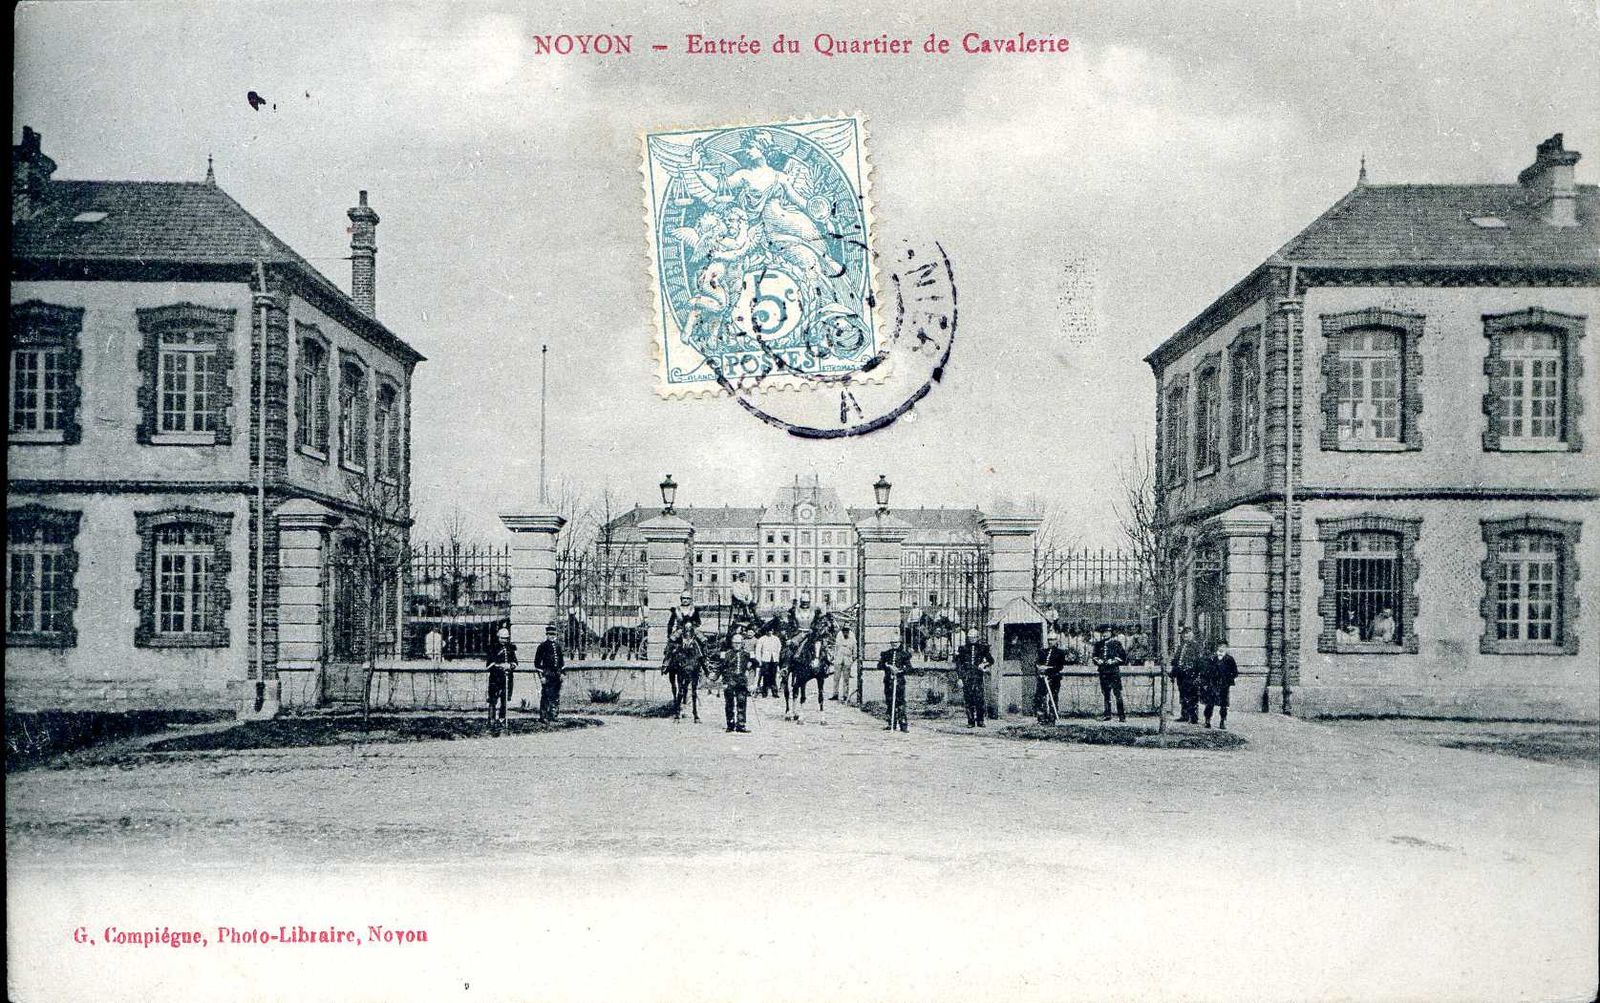 Album - la ville de Noyon (Oise), la caserne, le régiment du 9éme cuirassiers